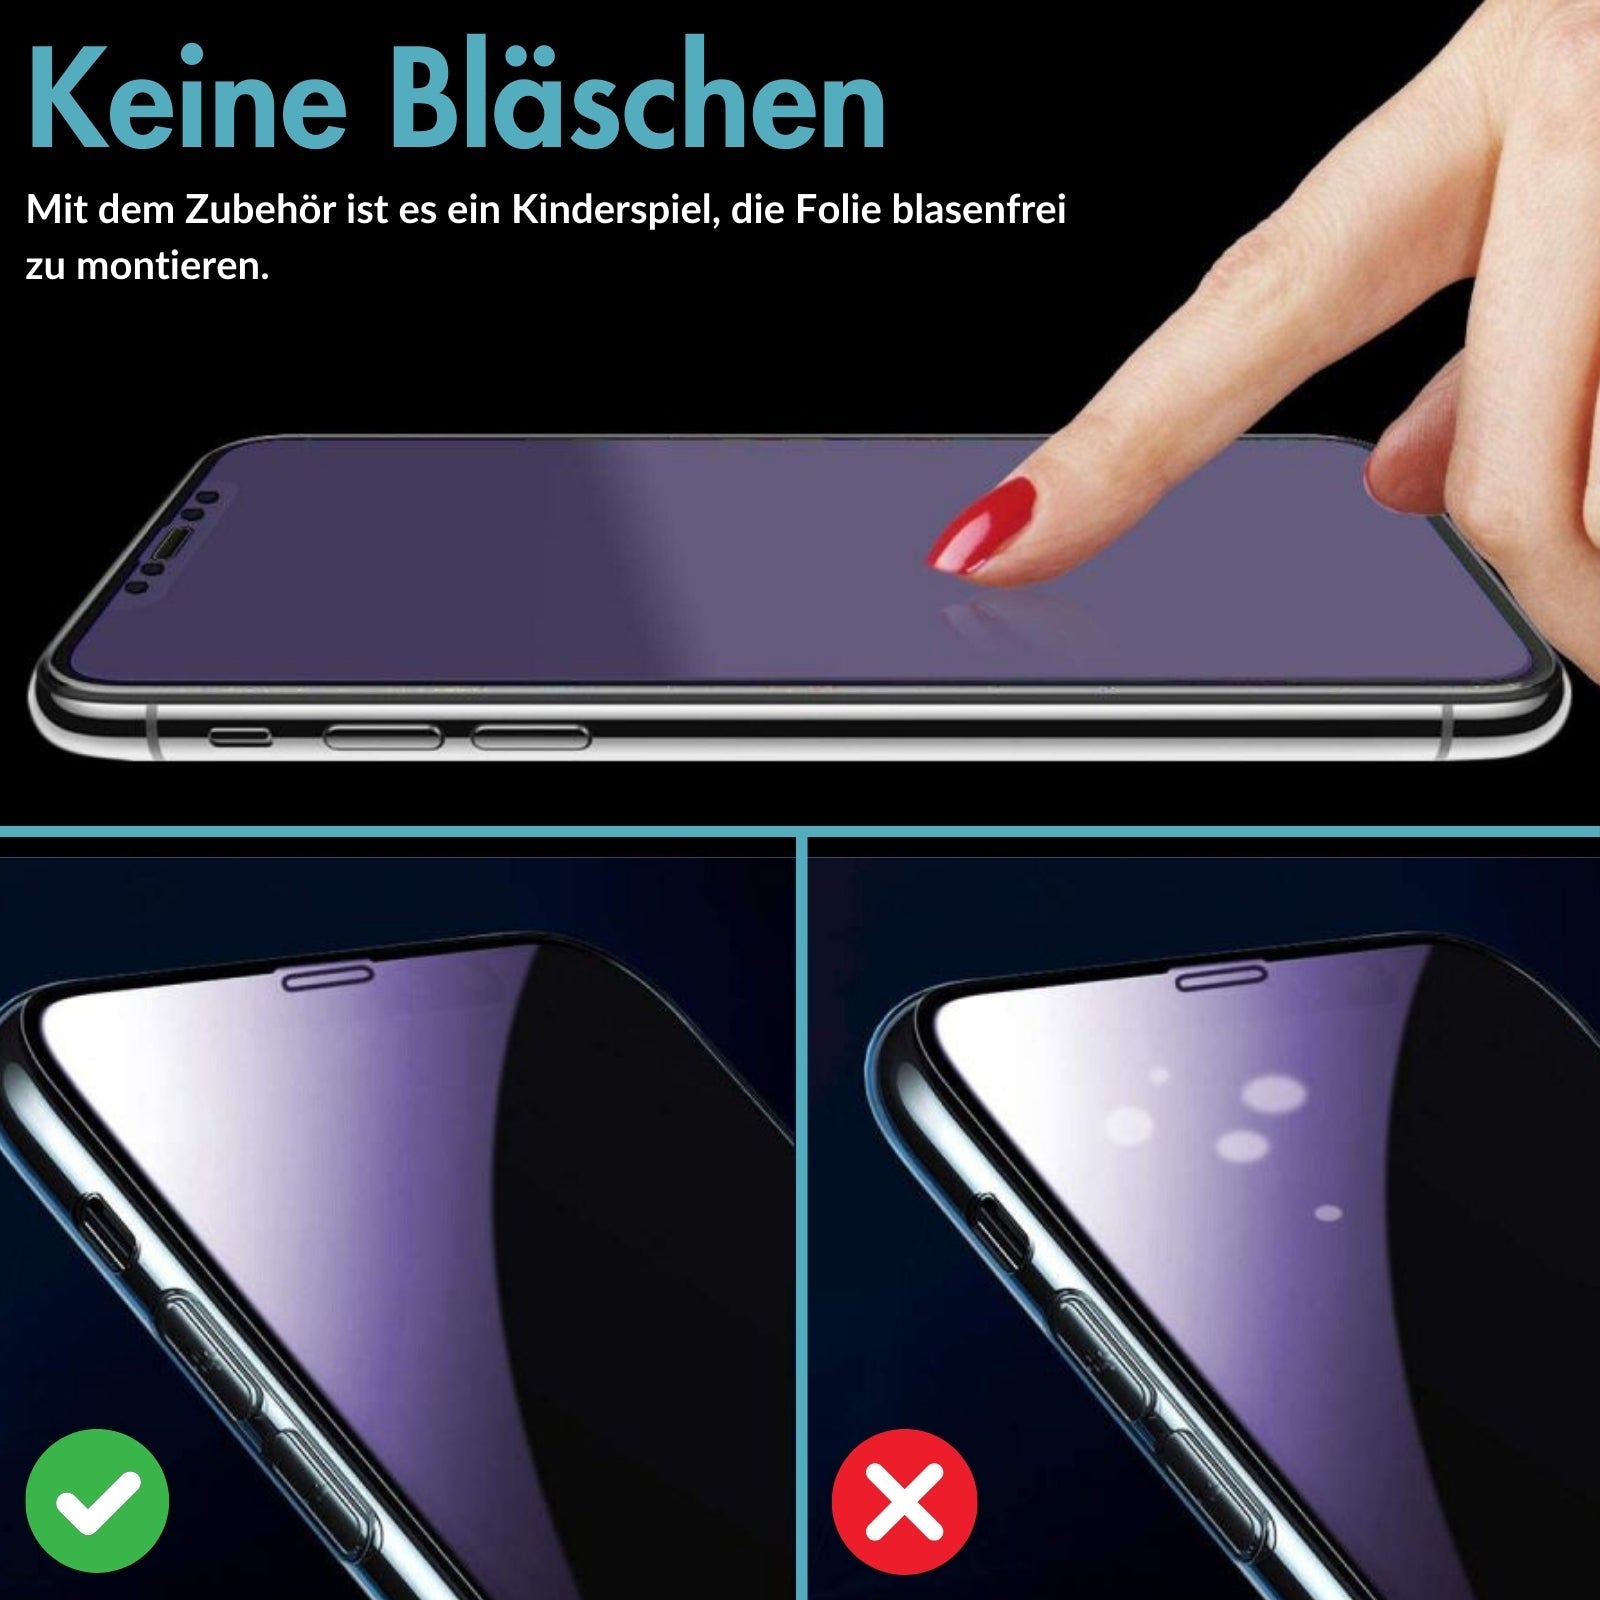 MonkeyTEC Pack de 3 Protections d'écran, Anti-lumière Bleue + Anti-Lumière Verte, Protection contre l'éblouissement pour Yeux sensibles et stressés, Apple iPhone, dureté H9